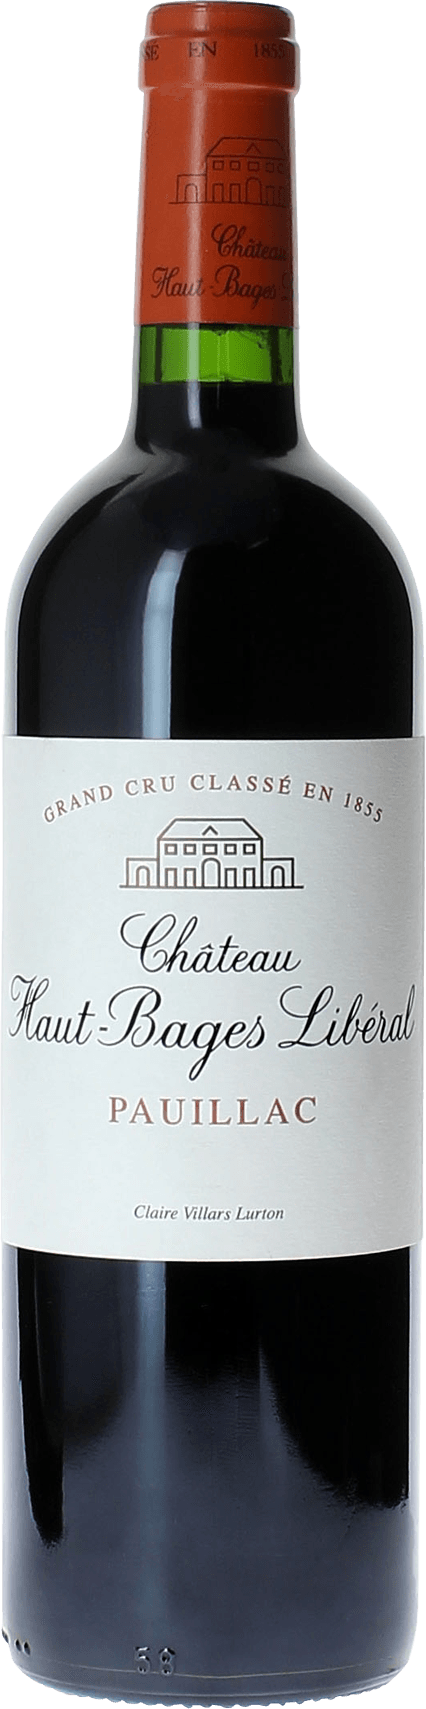 Haut bages liberal 1986 5 me Grand cru class Pauillac, Bordeaux rouge